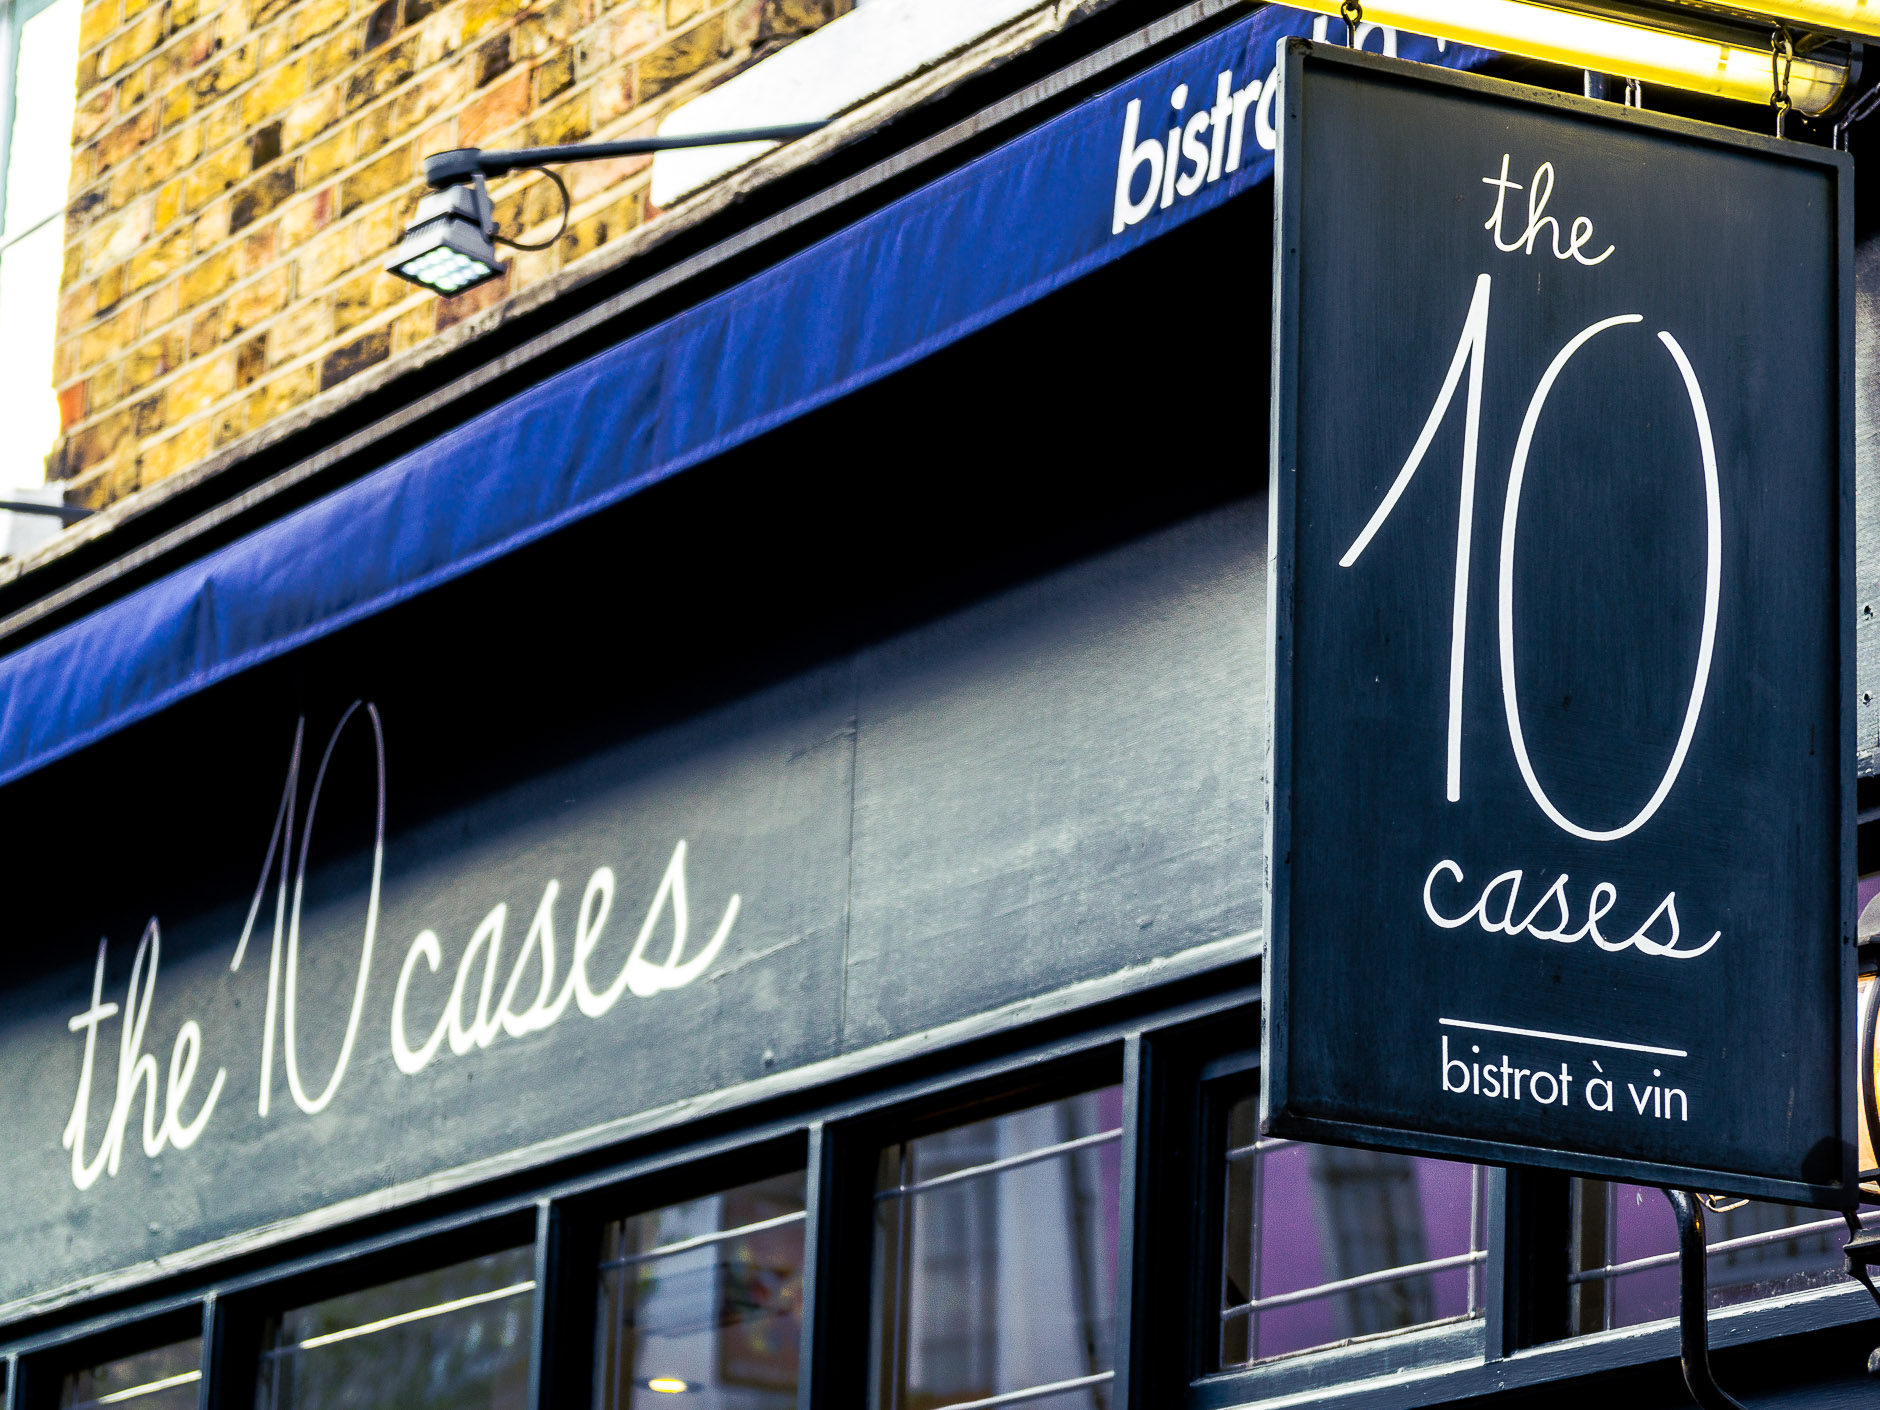 The 10 Cases Restaurant London